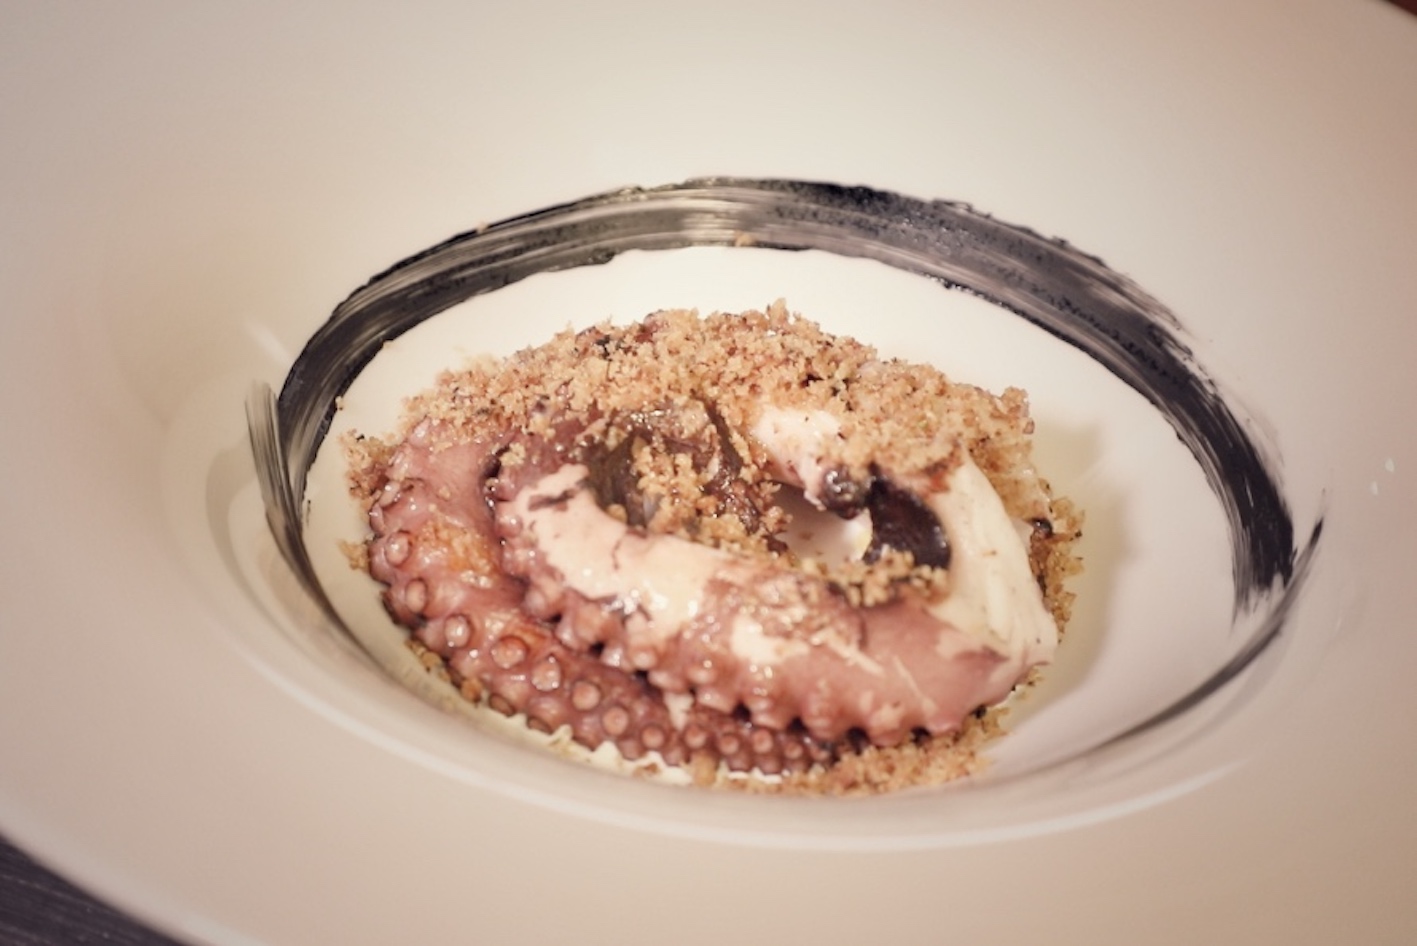 Il polipo del Marlin - ristorante Saronno